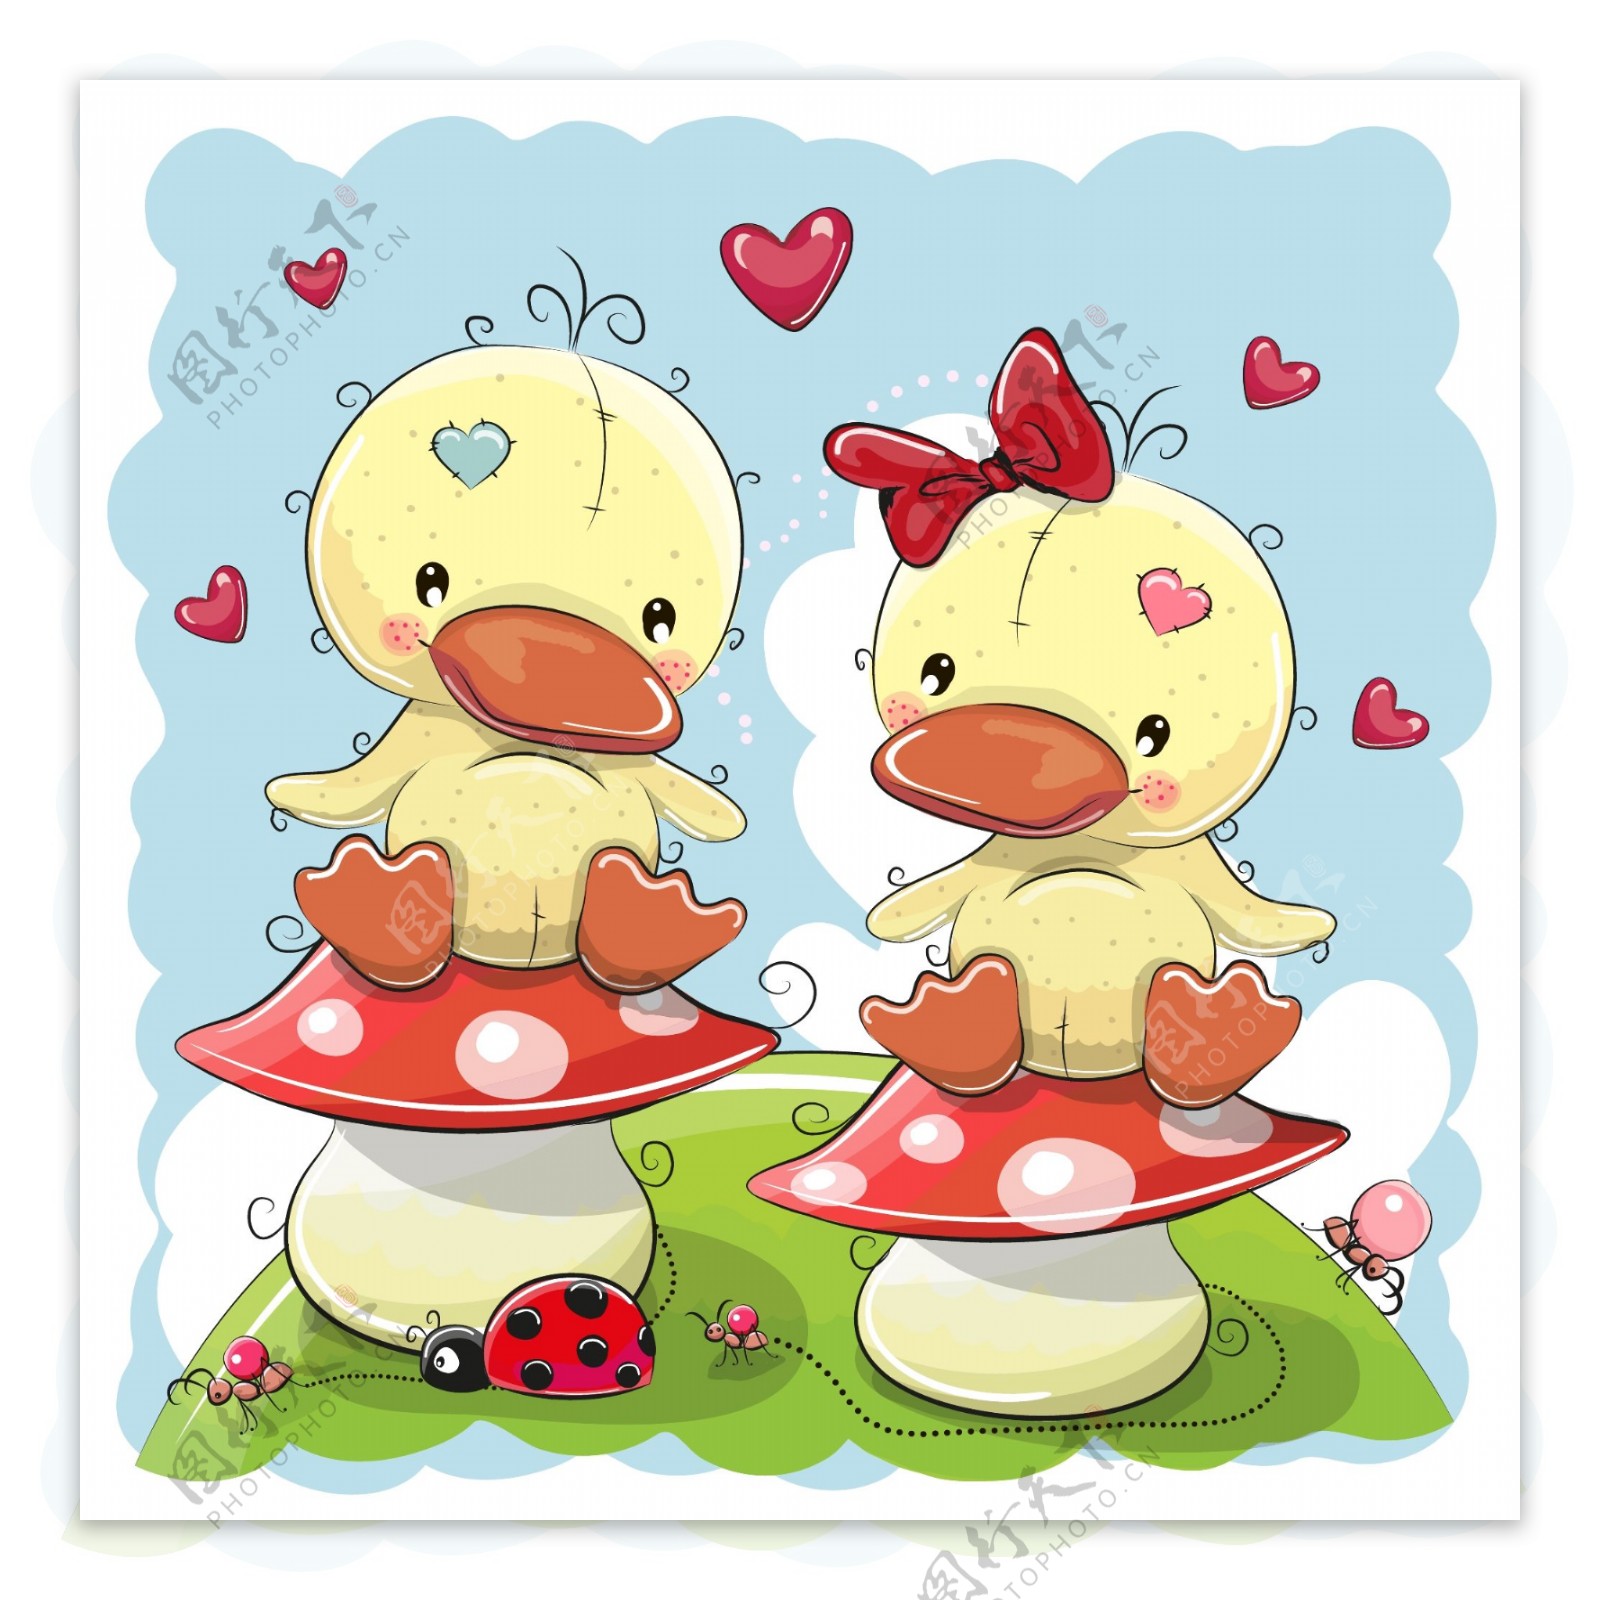 蘑菇上的小鸭子卡通动物插画矢量素材